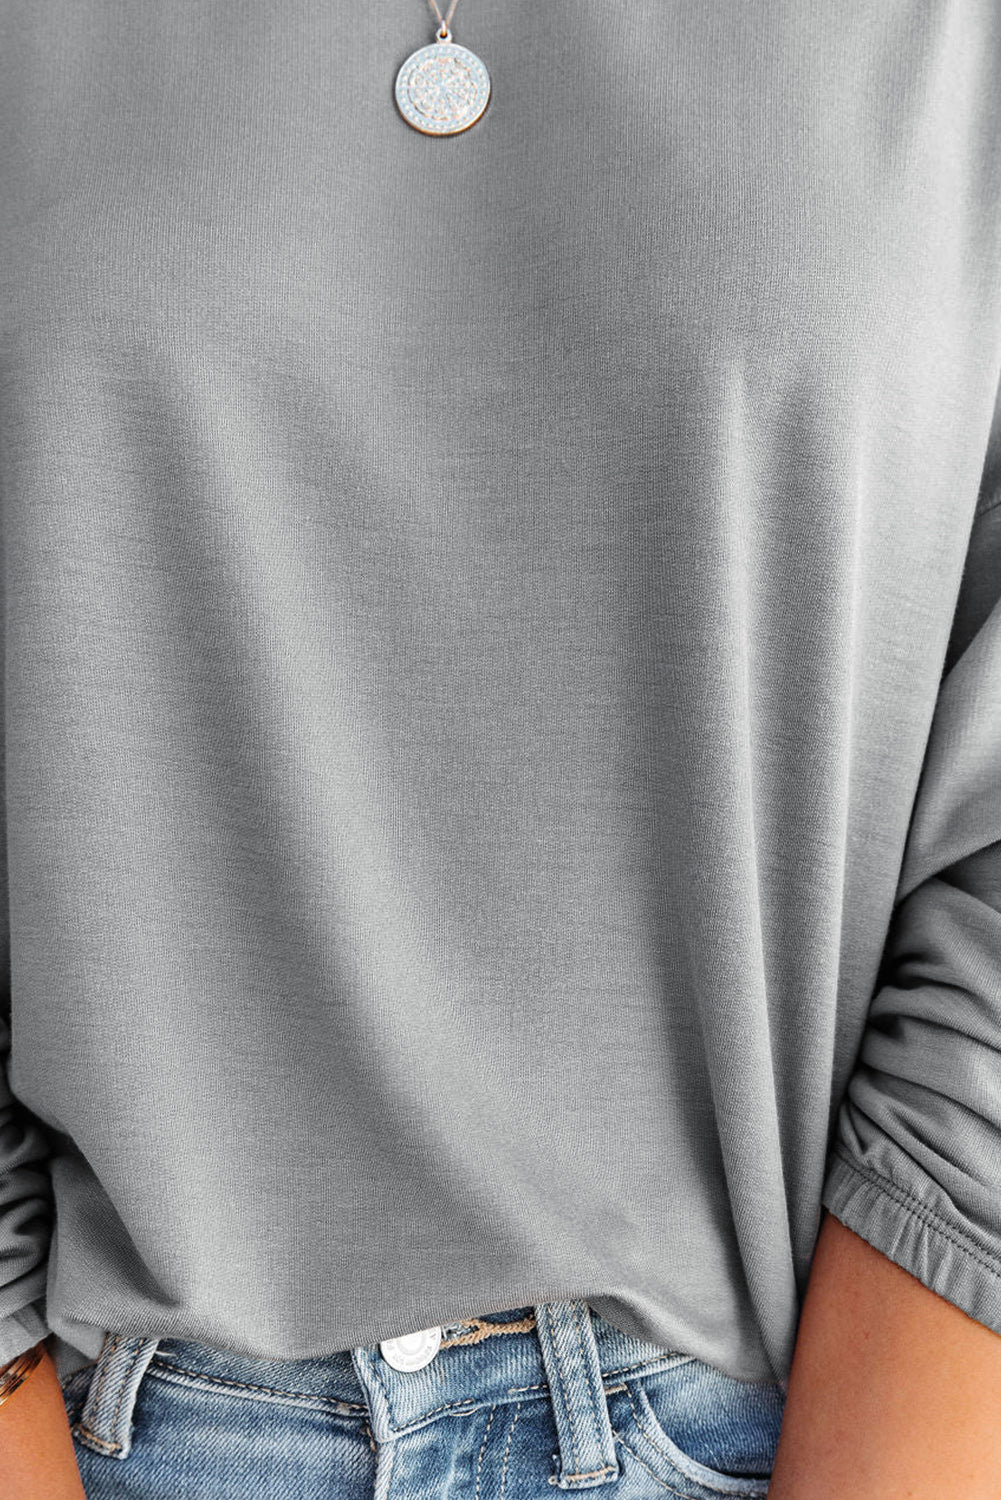 Siva ohlapna majica s širokim izrezom in batwing rokavi